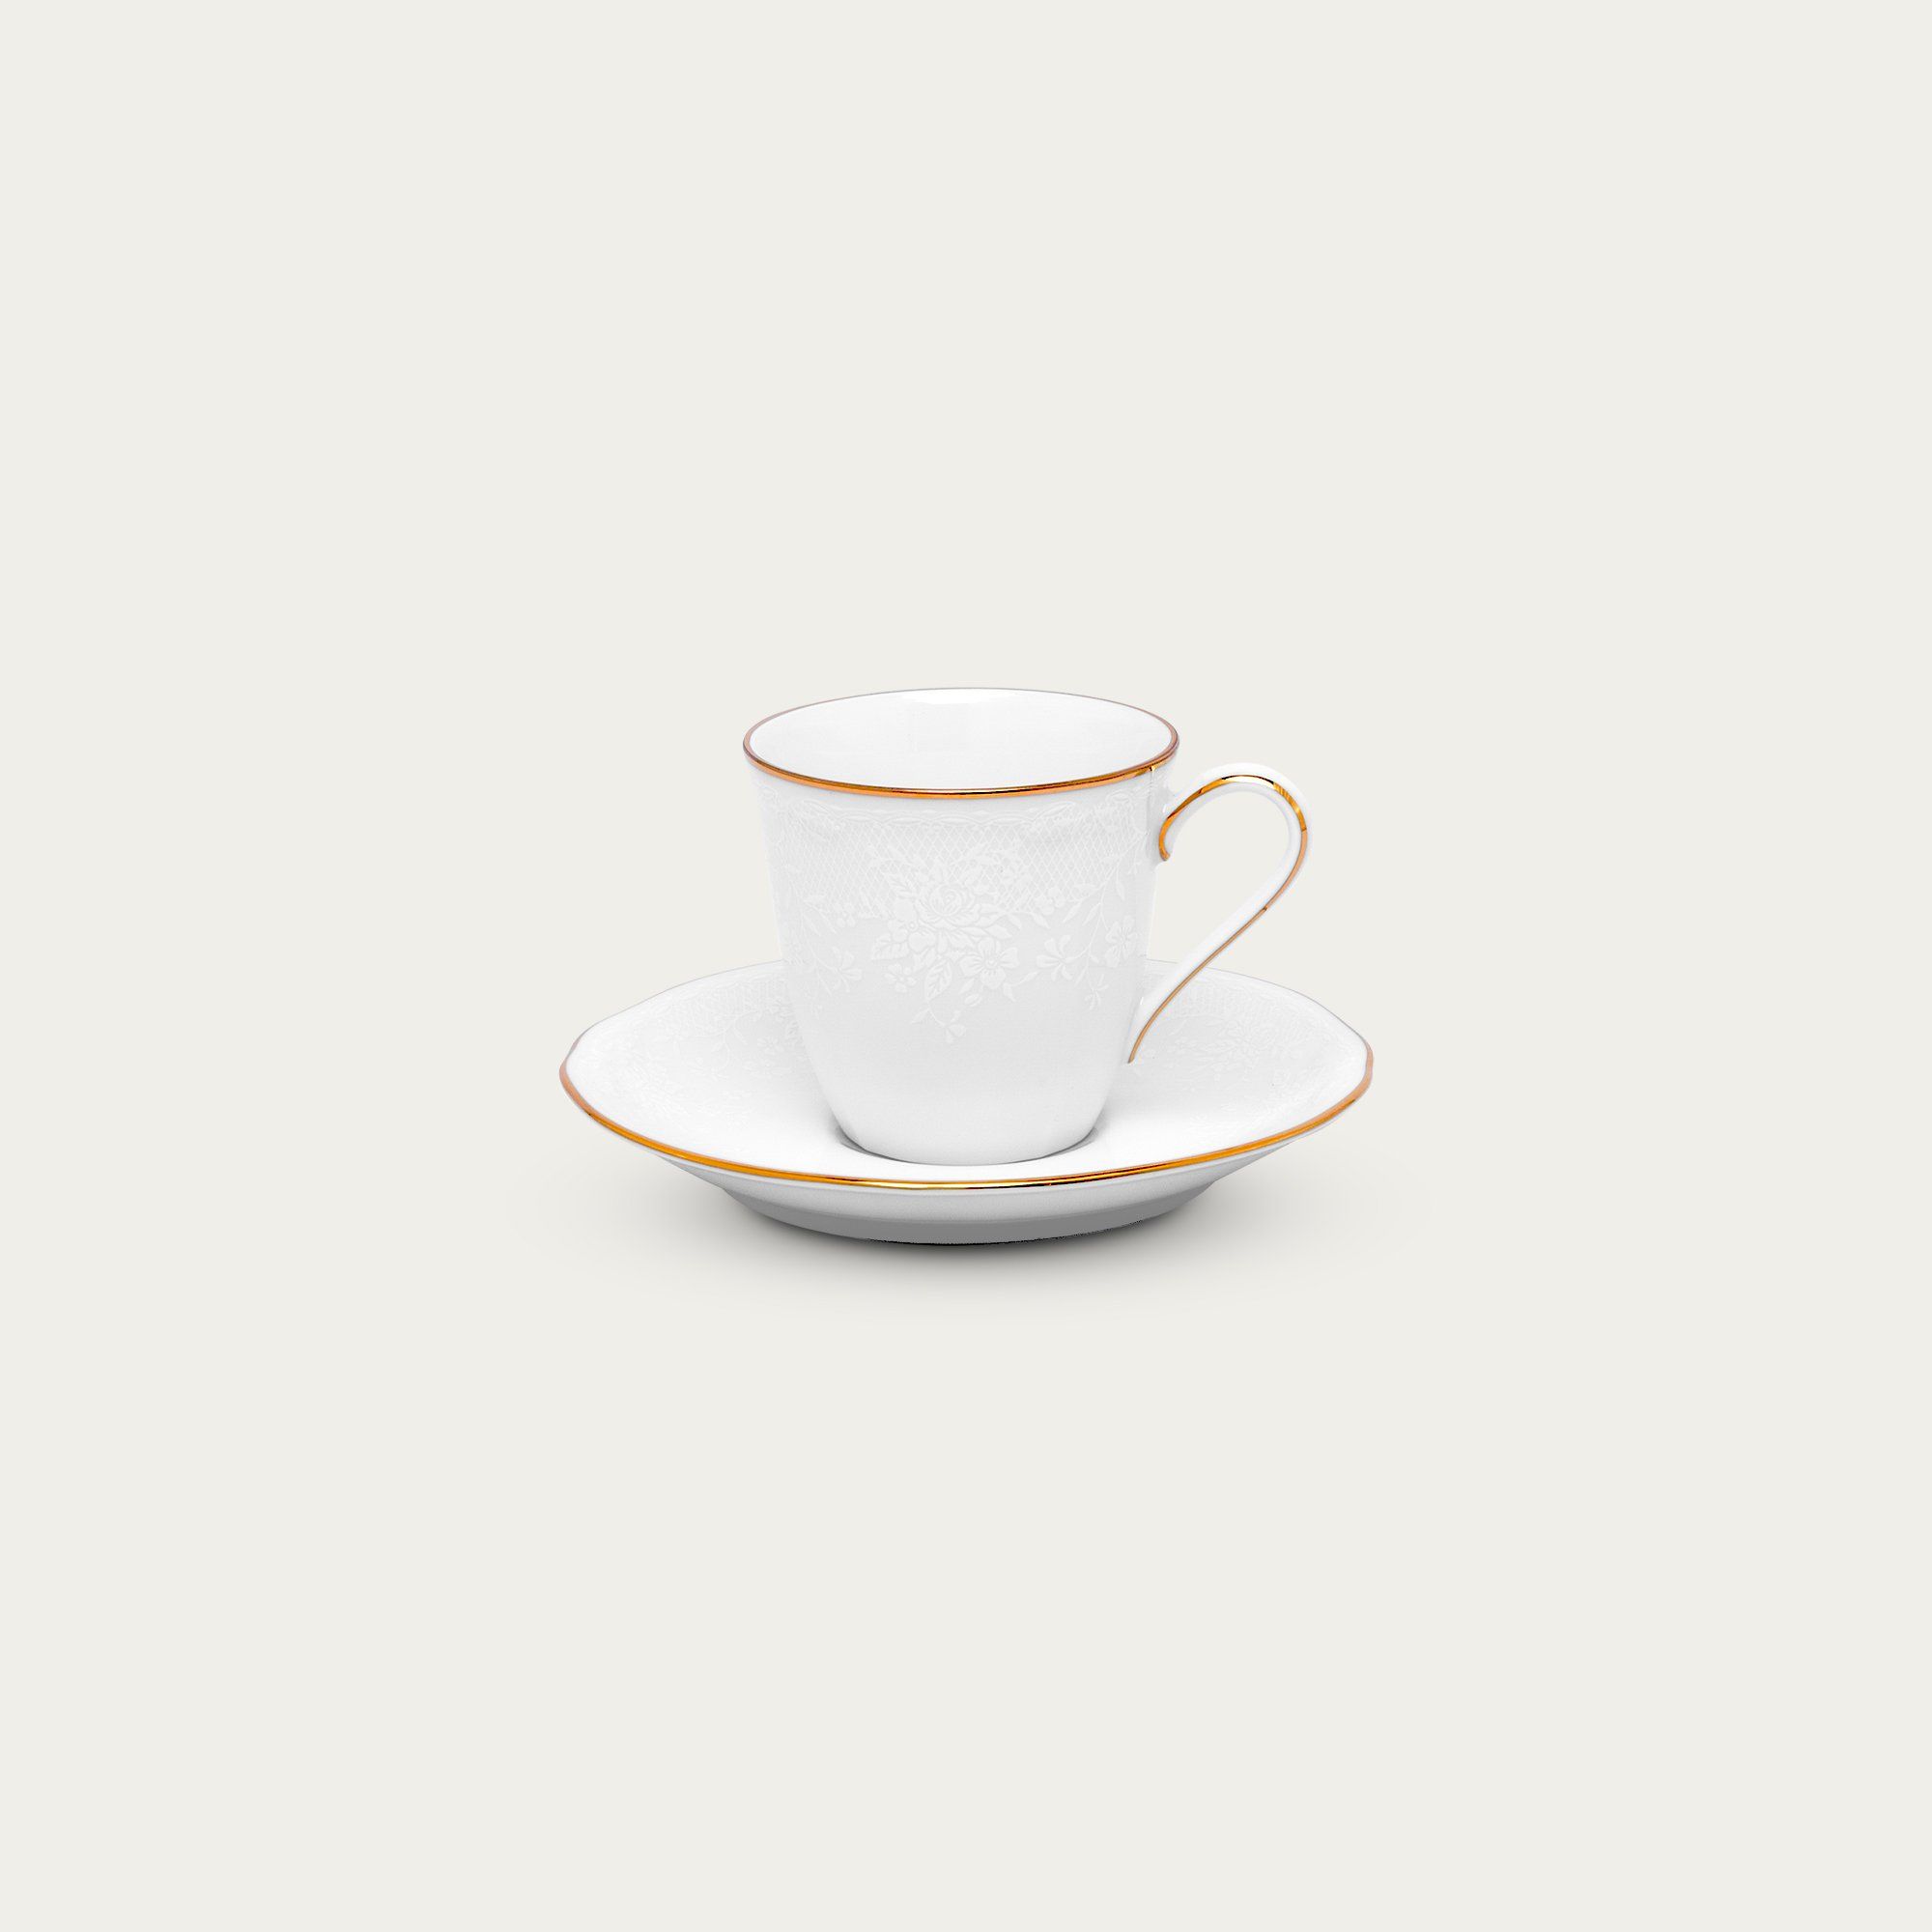  Chén trà (tách trà) kèm đĩa lót 115ml sứ trắng | Princess Bouquet Gold 1660L-T94492 